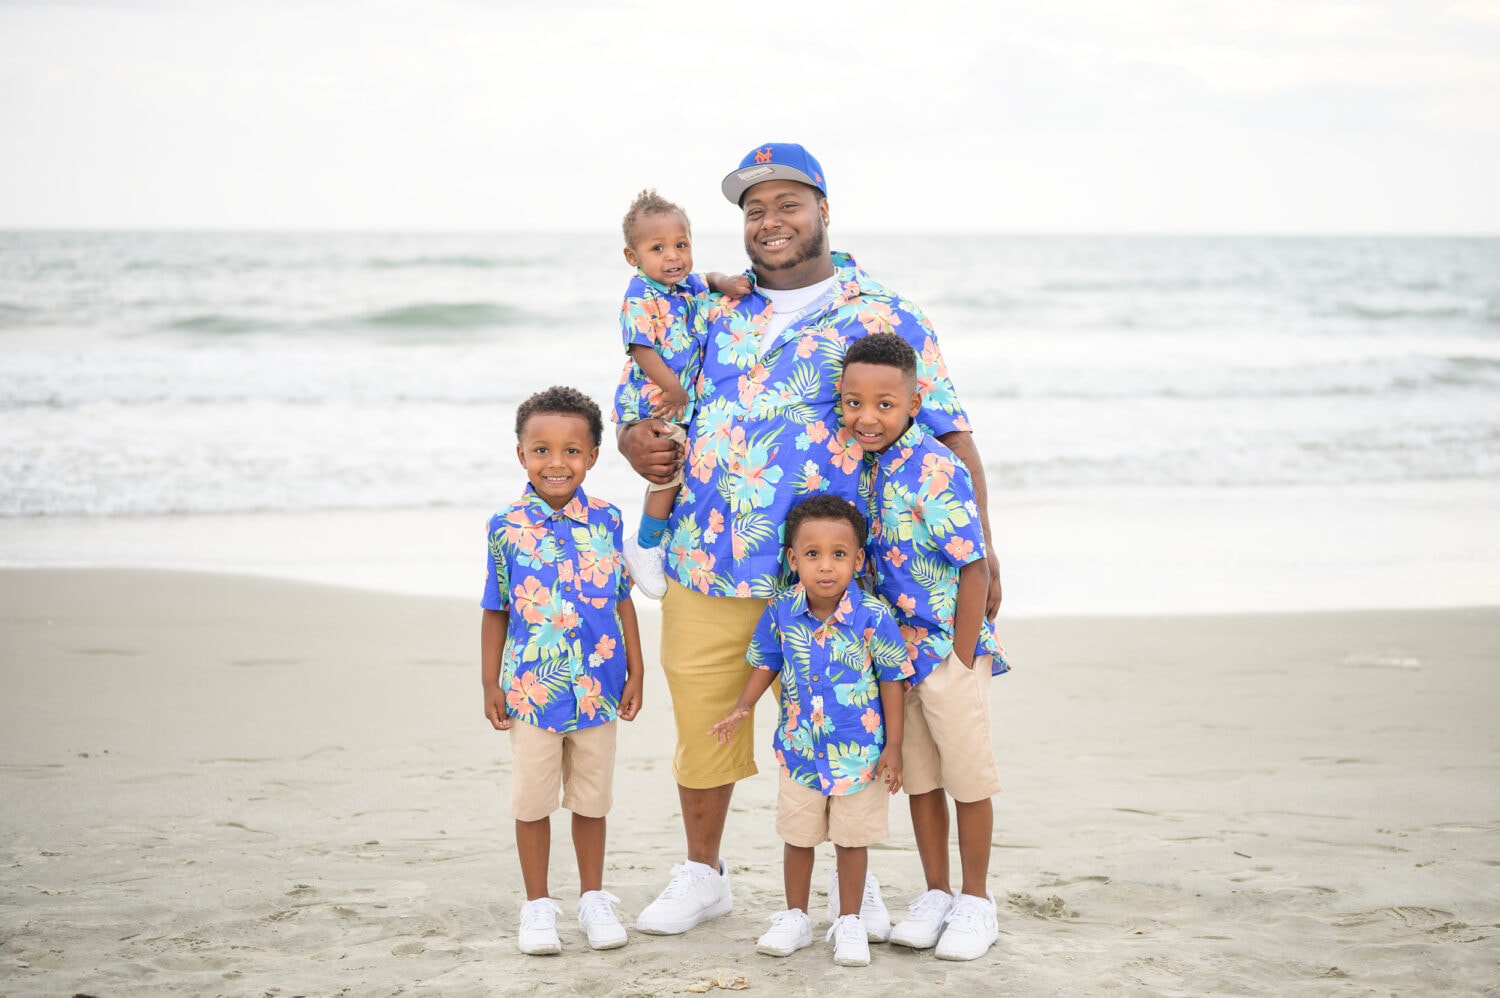 Happy family with 4 little boys on the beach - Huntington Beach State Park